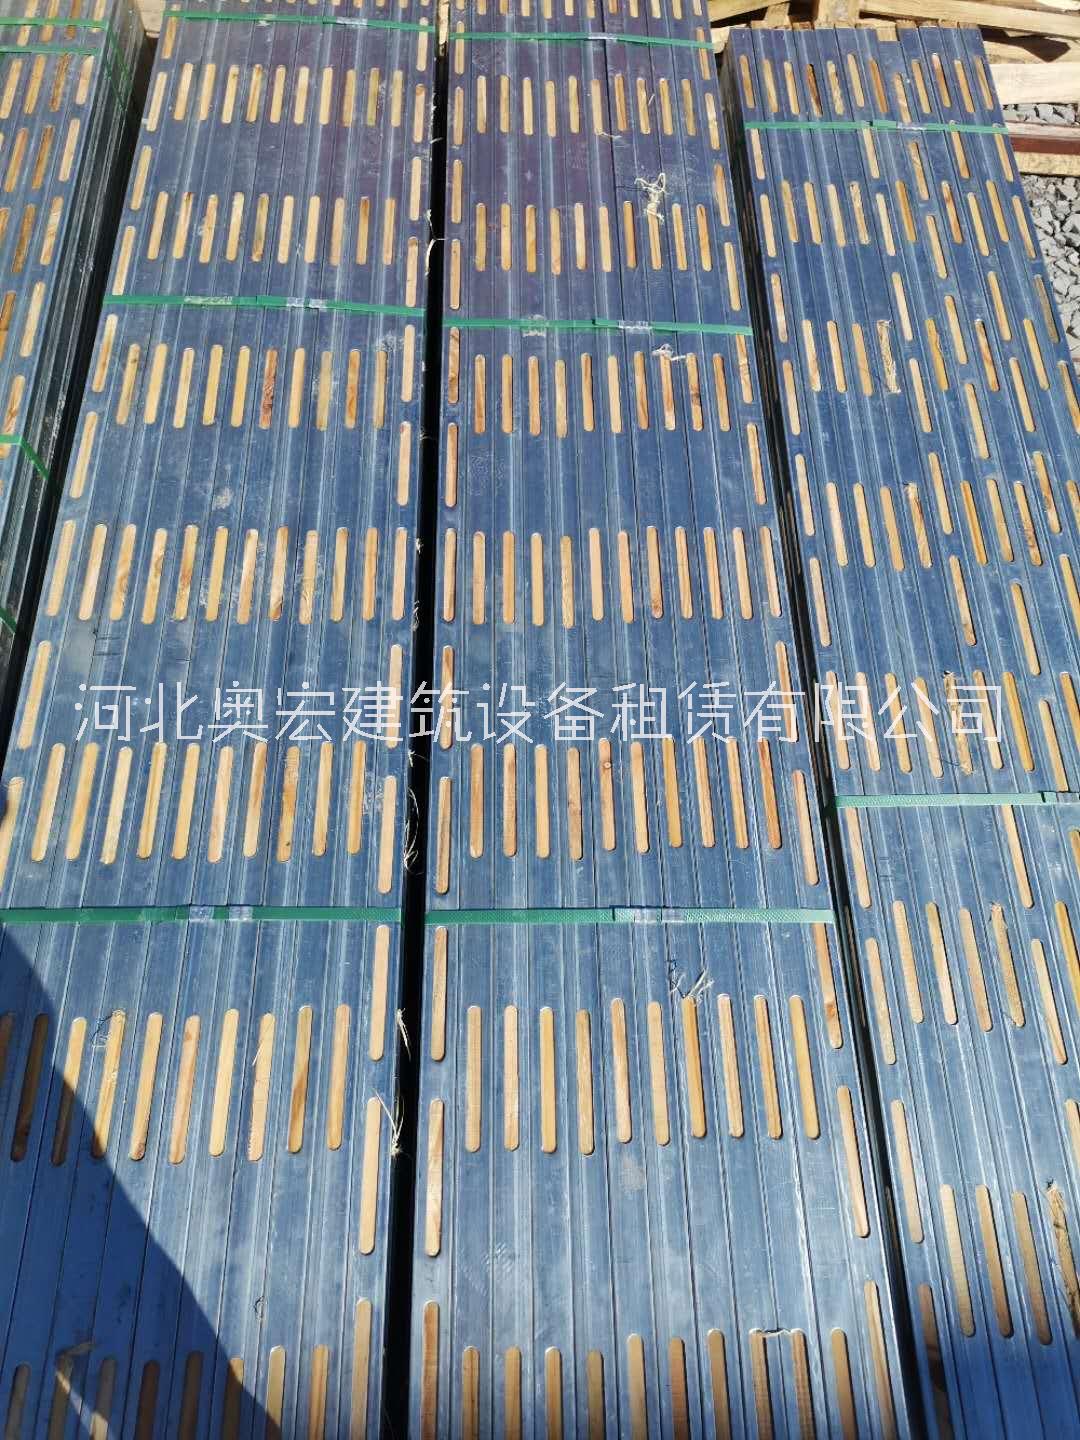 钢包木厂家河北奥宏钢包木生产加工钢包木租赁